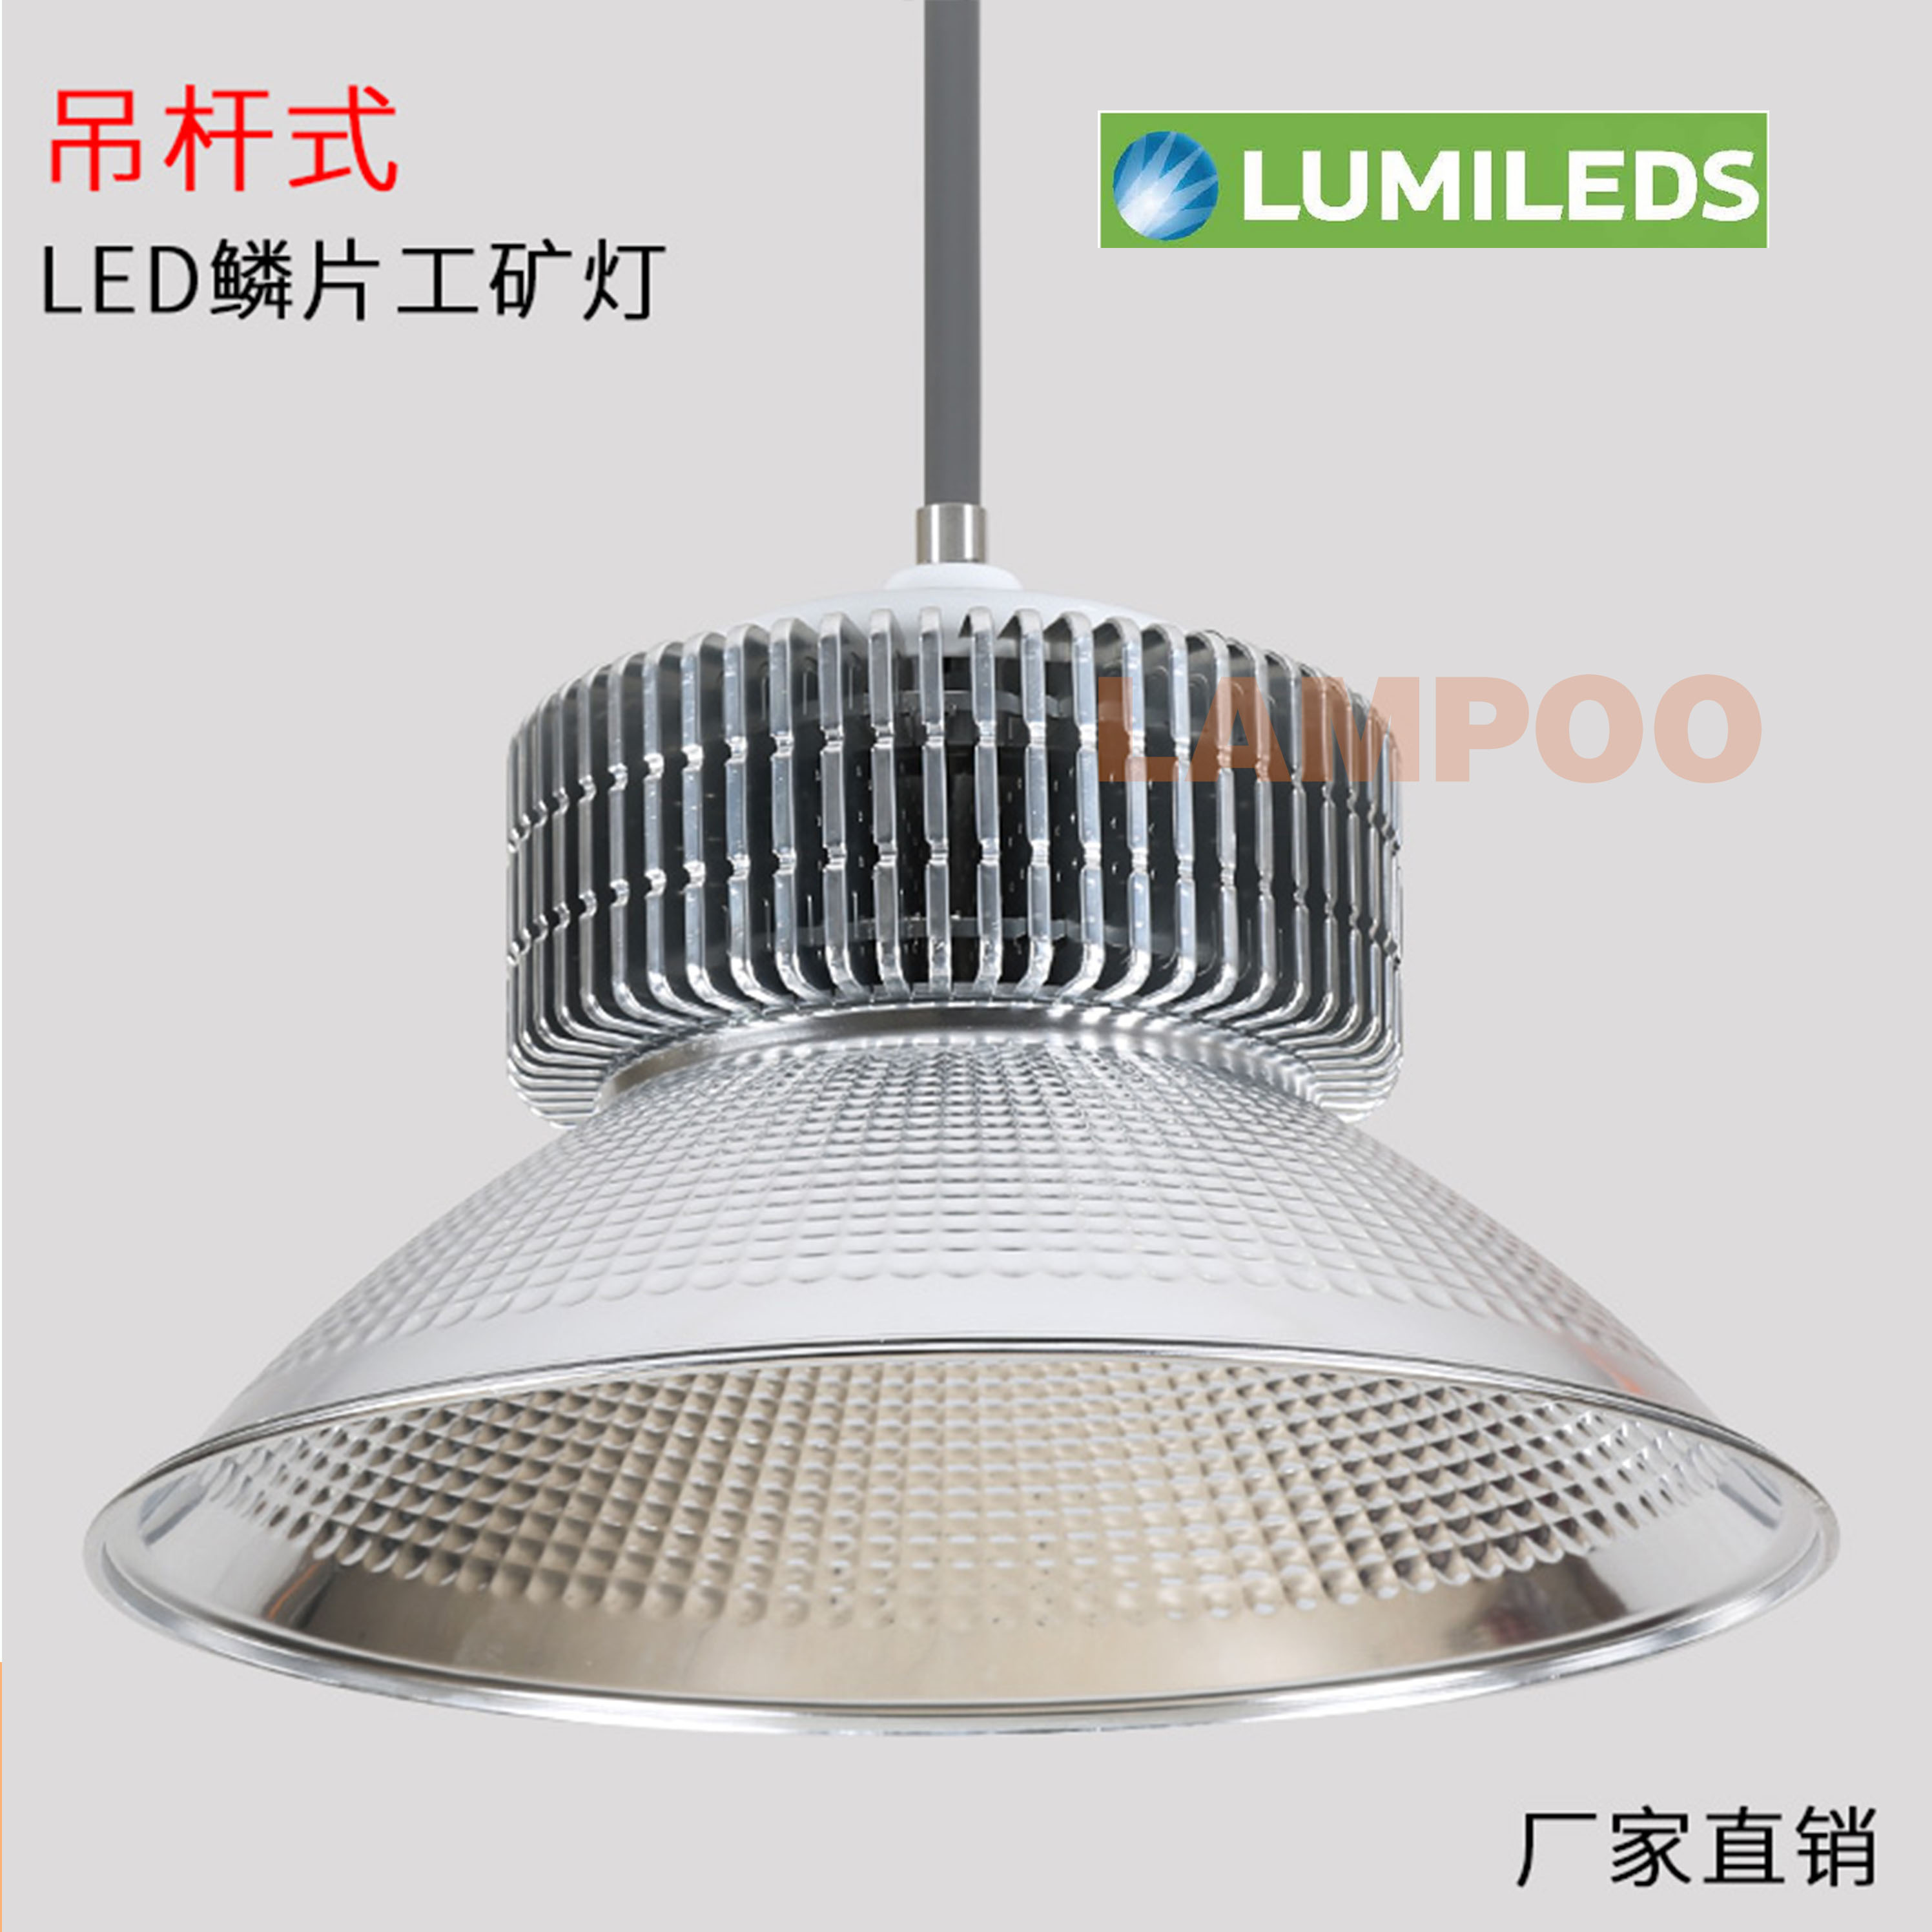 广东LED鳍片式工矿灯生产厂家 东莞供应直销LED工矿灯批发价格